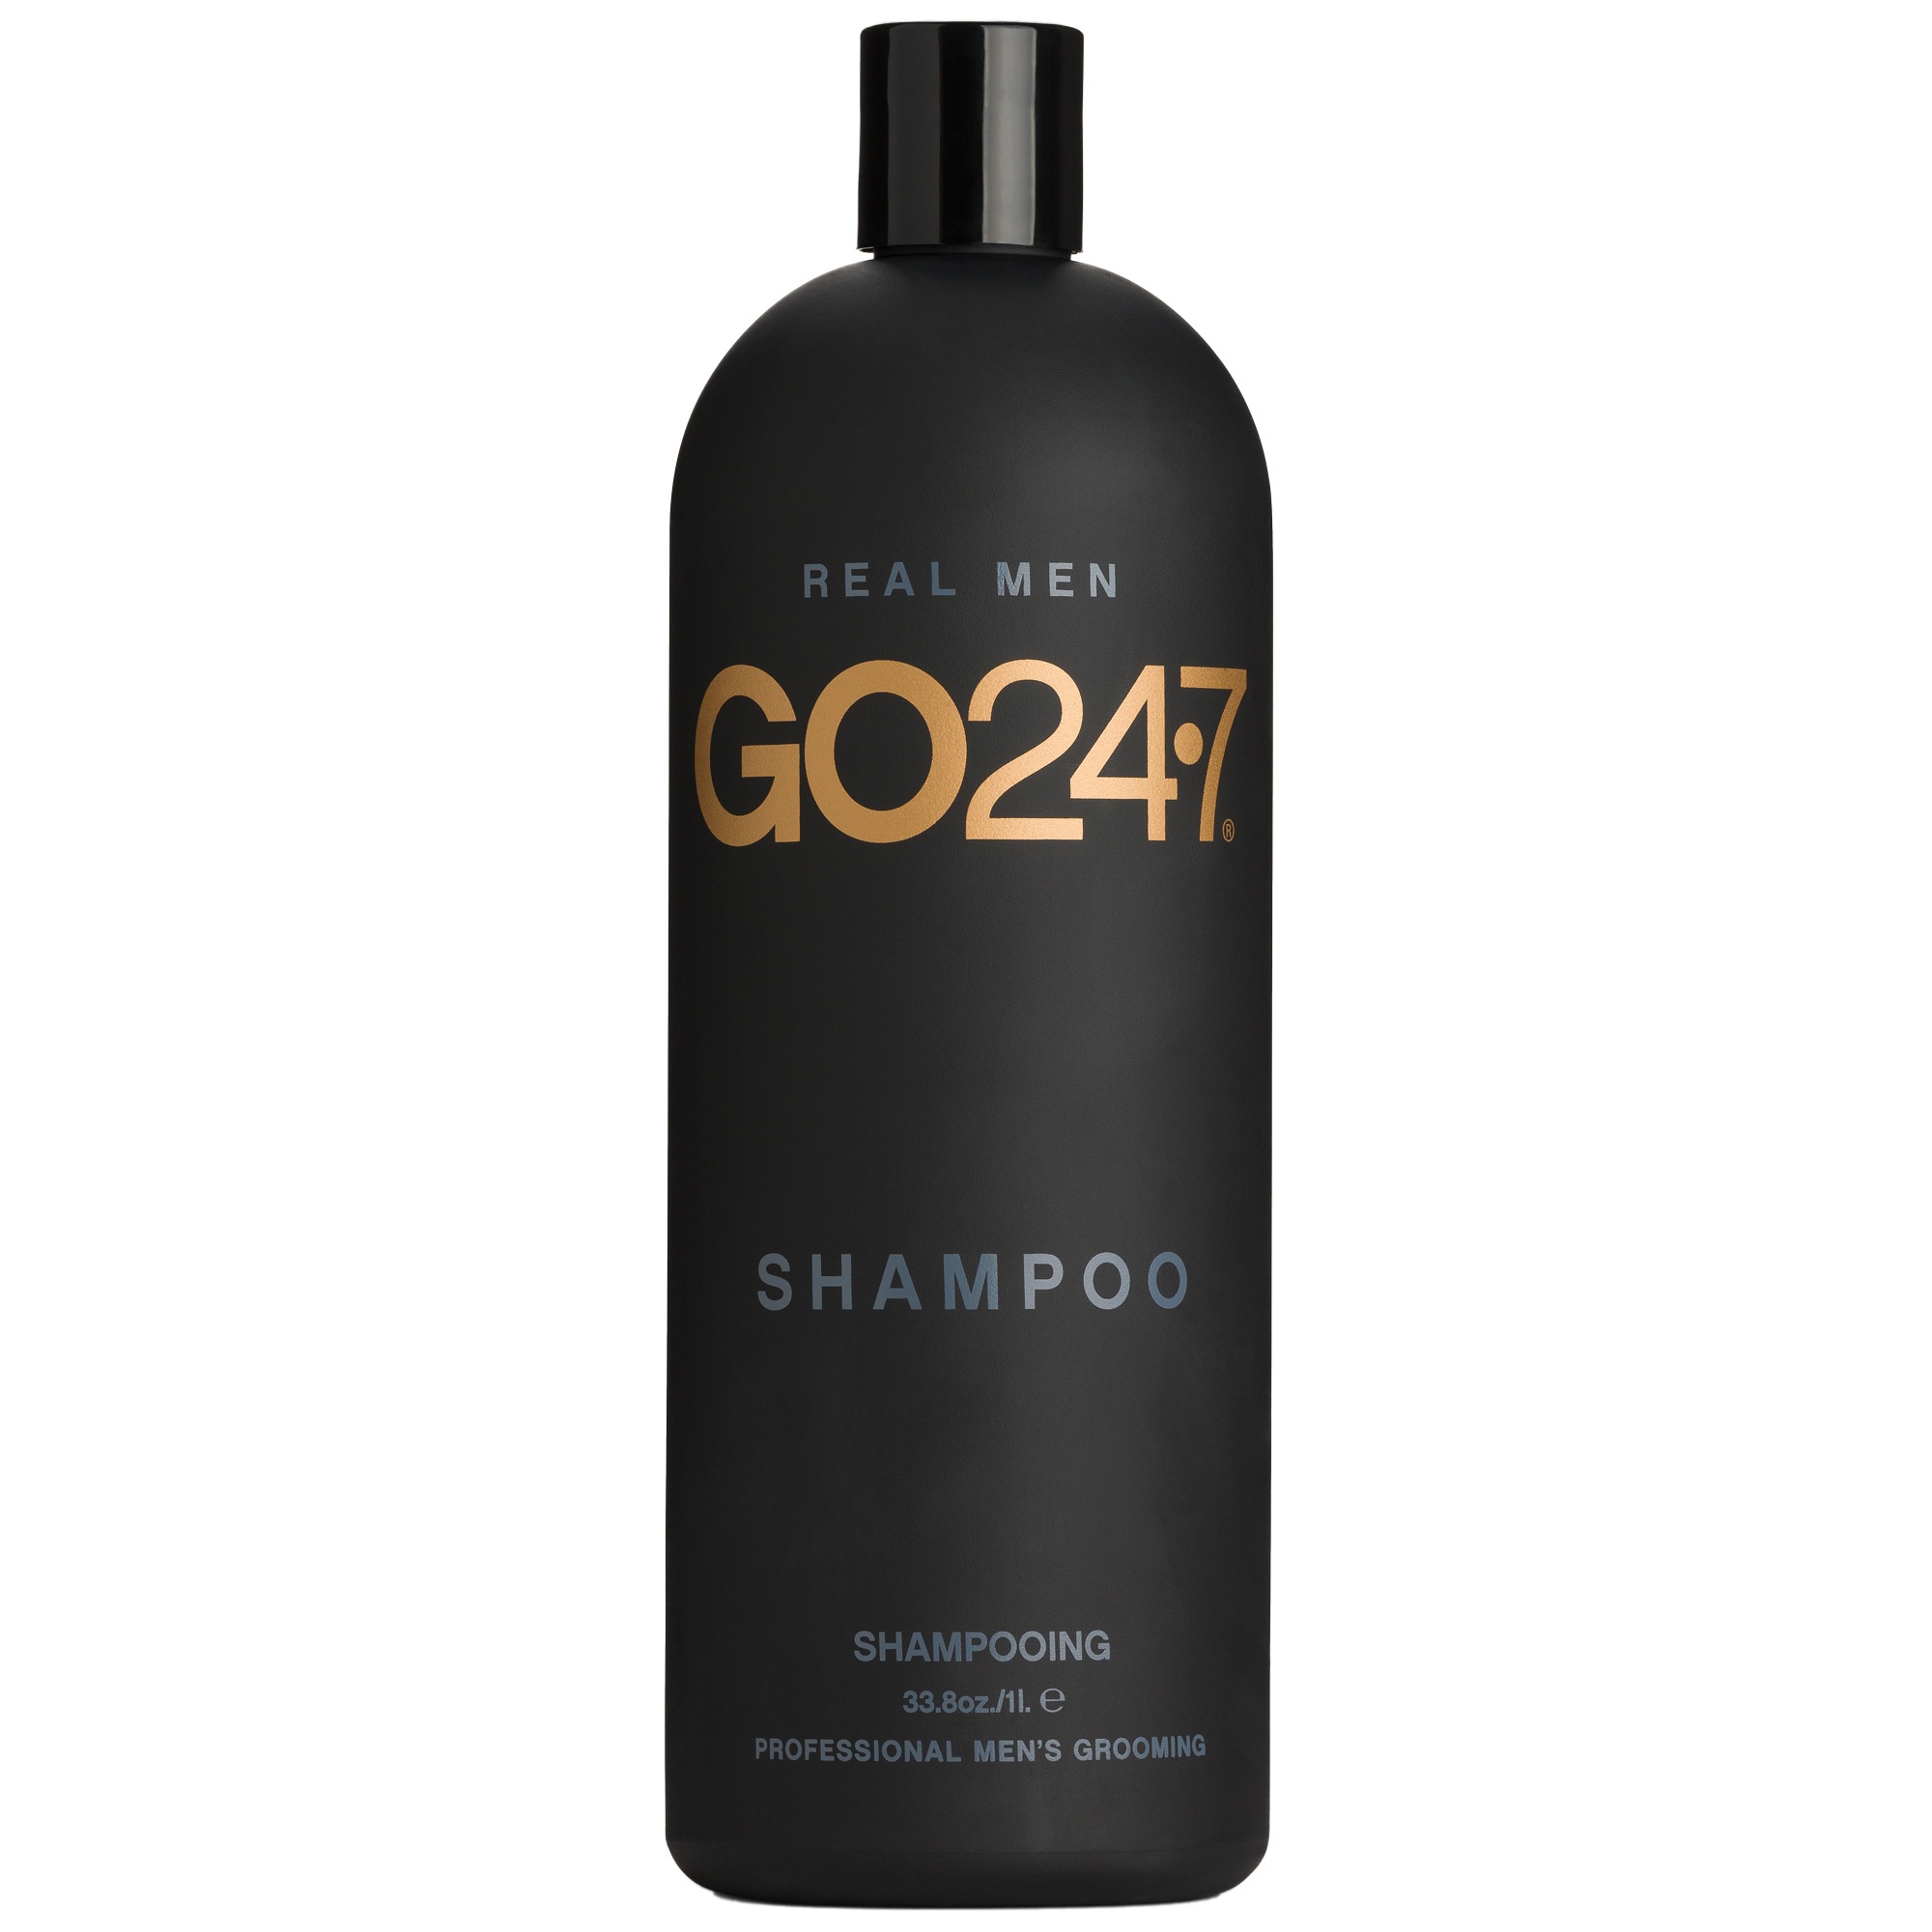 GO24•7 MEN Shampoo